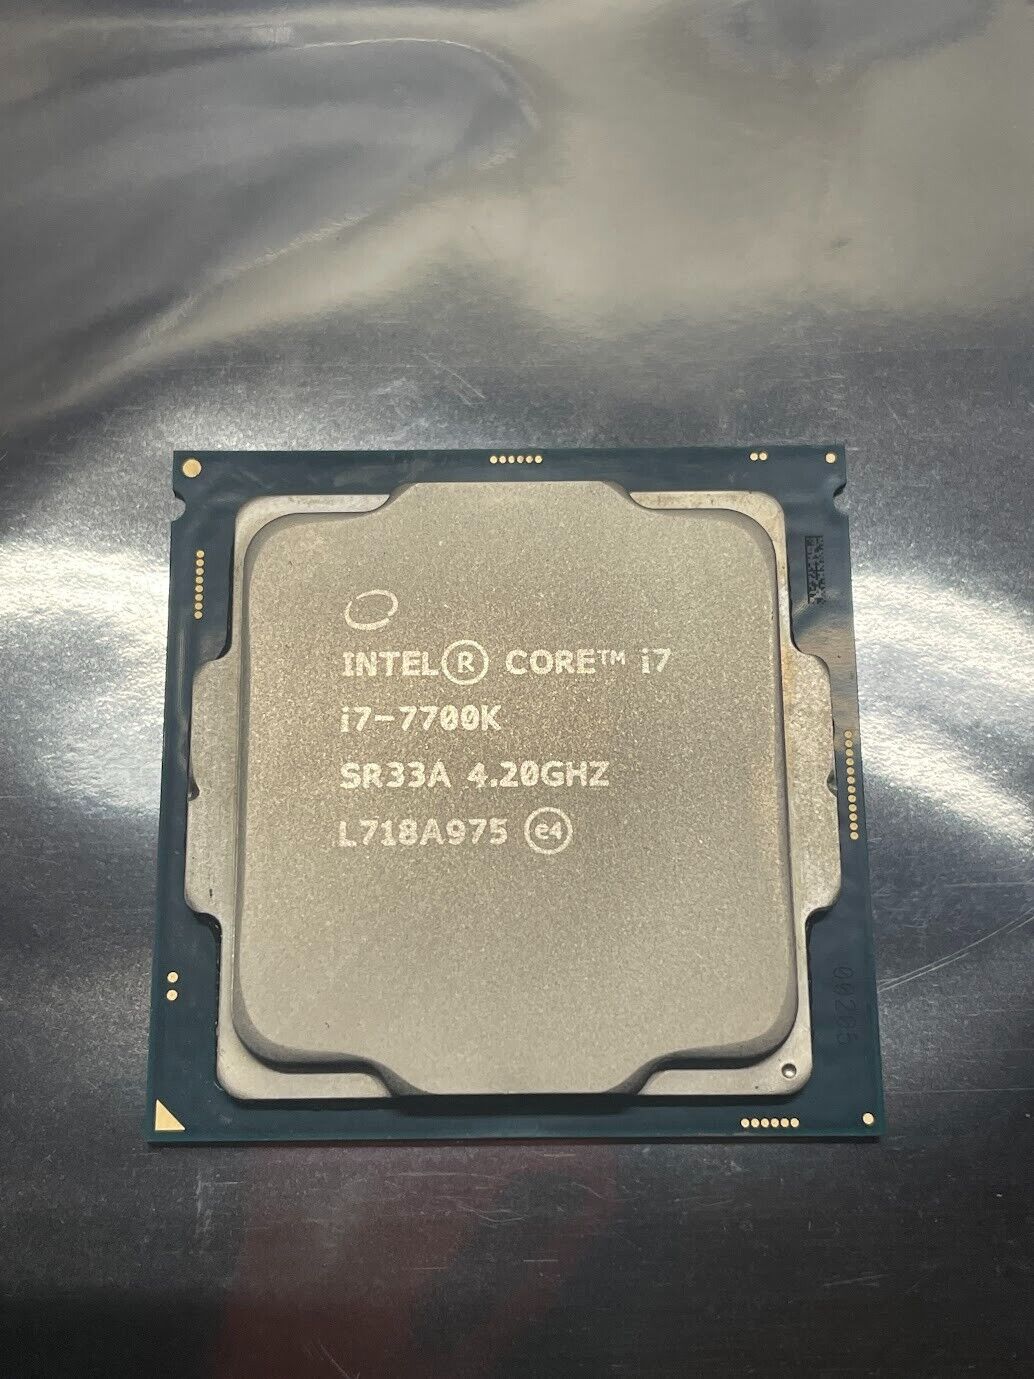 Intel Core I7-7700K Processor (4.2 GHz, Quad-Core, LGA 1151) SR33A - Tested Good